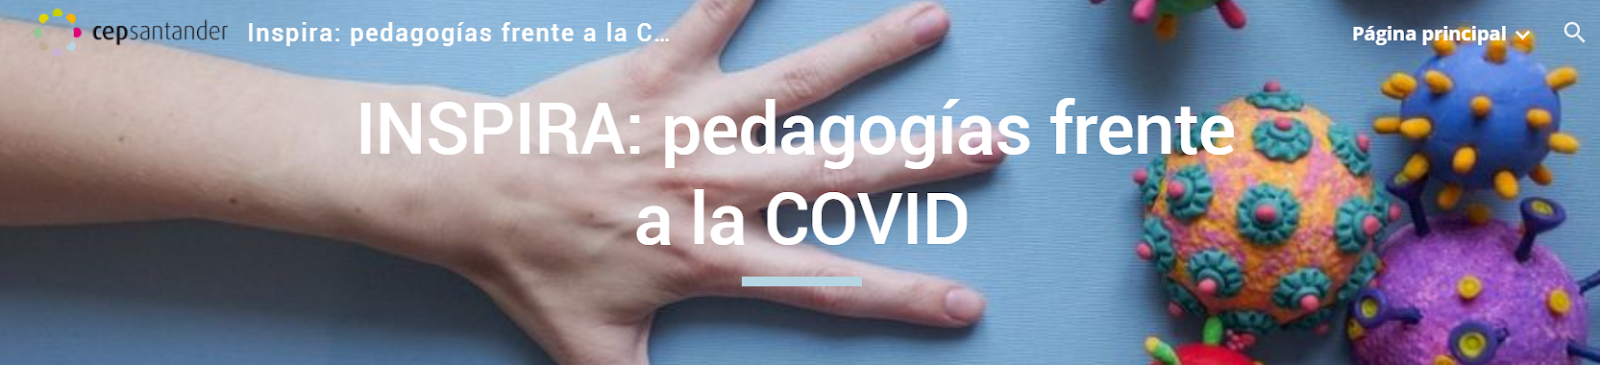 INSPIRA: pedagogías frente a la COVID